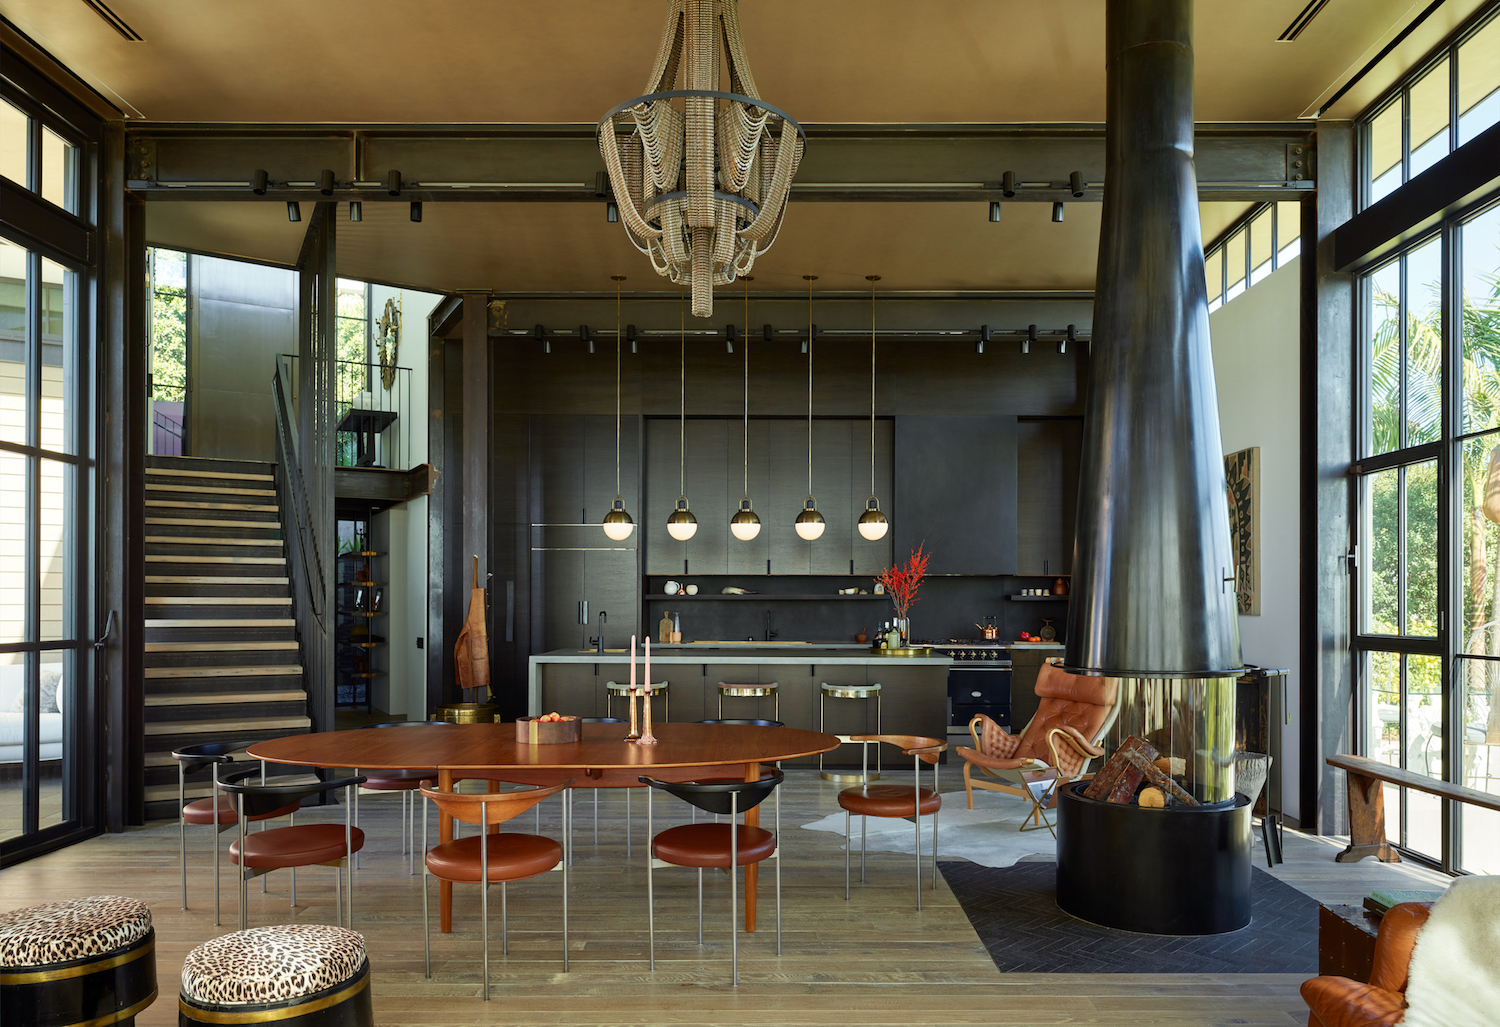 Home decor by interior designer Kristen Becker